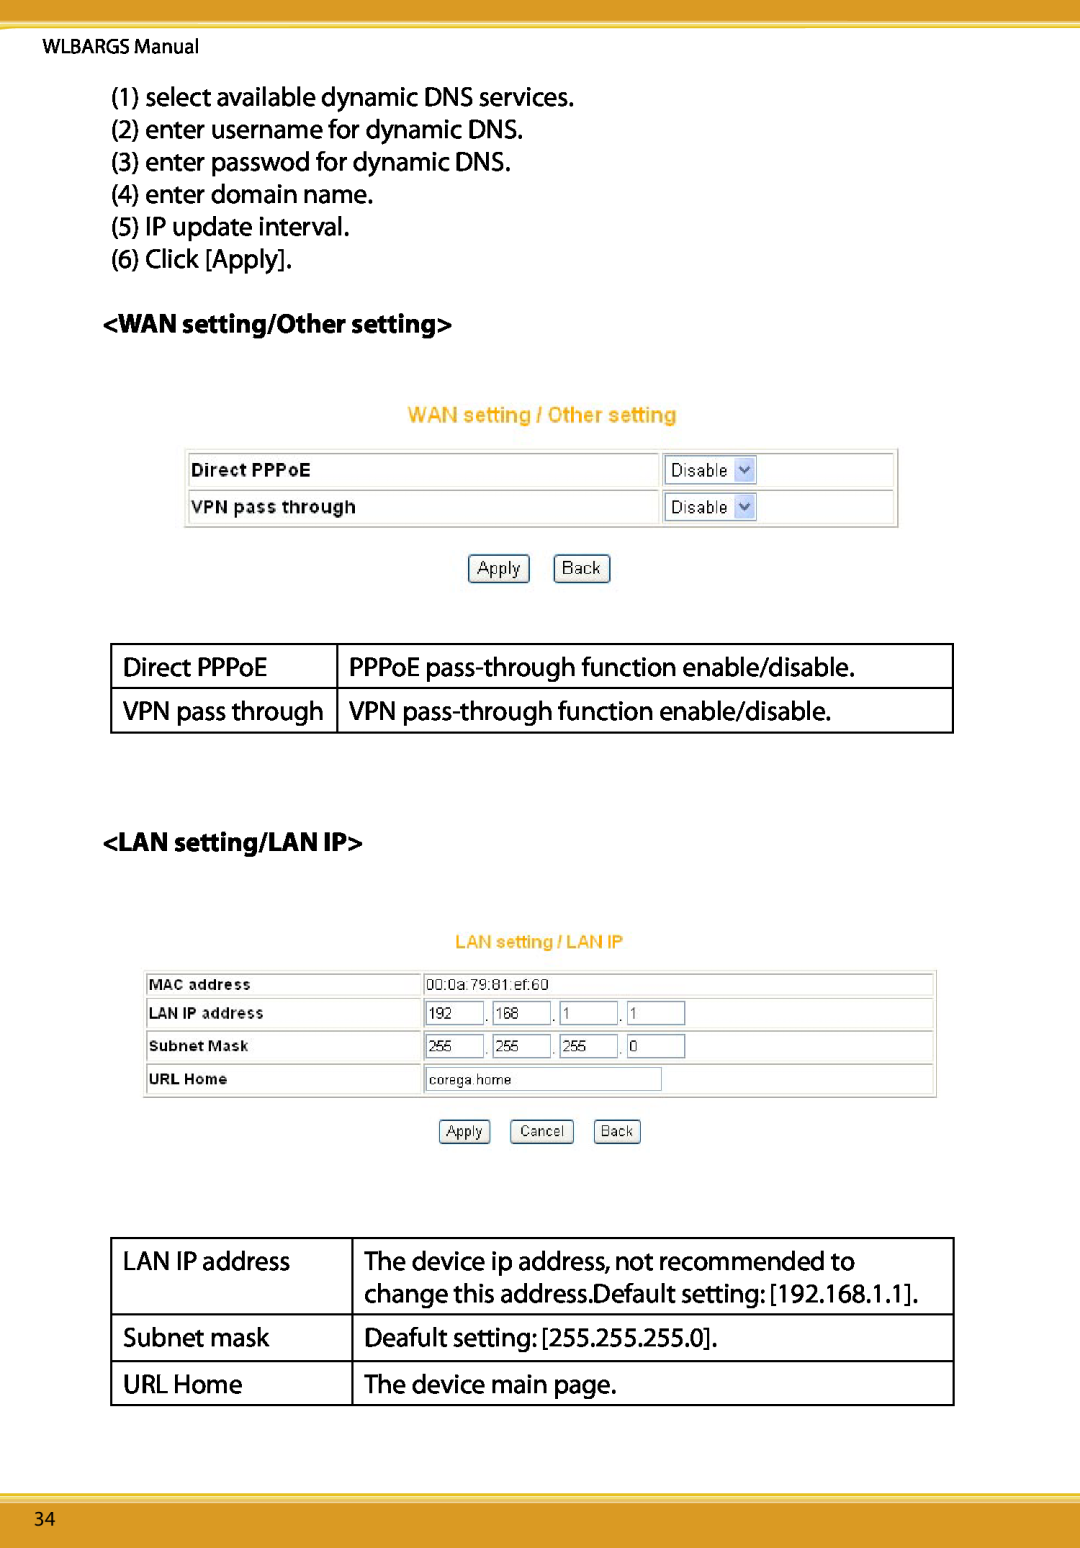 Allied Telesis CG-WLBARGS manual WAN setting/Other setting, LAN setting/LAN IP, VPN pass through 